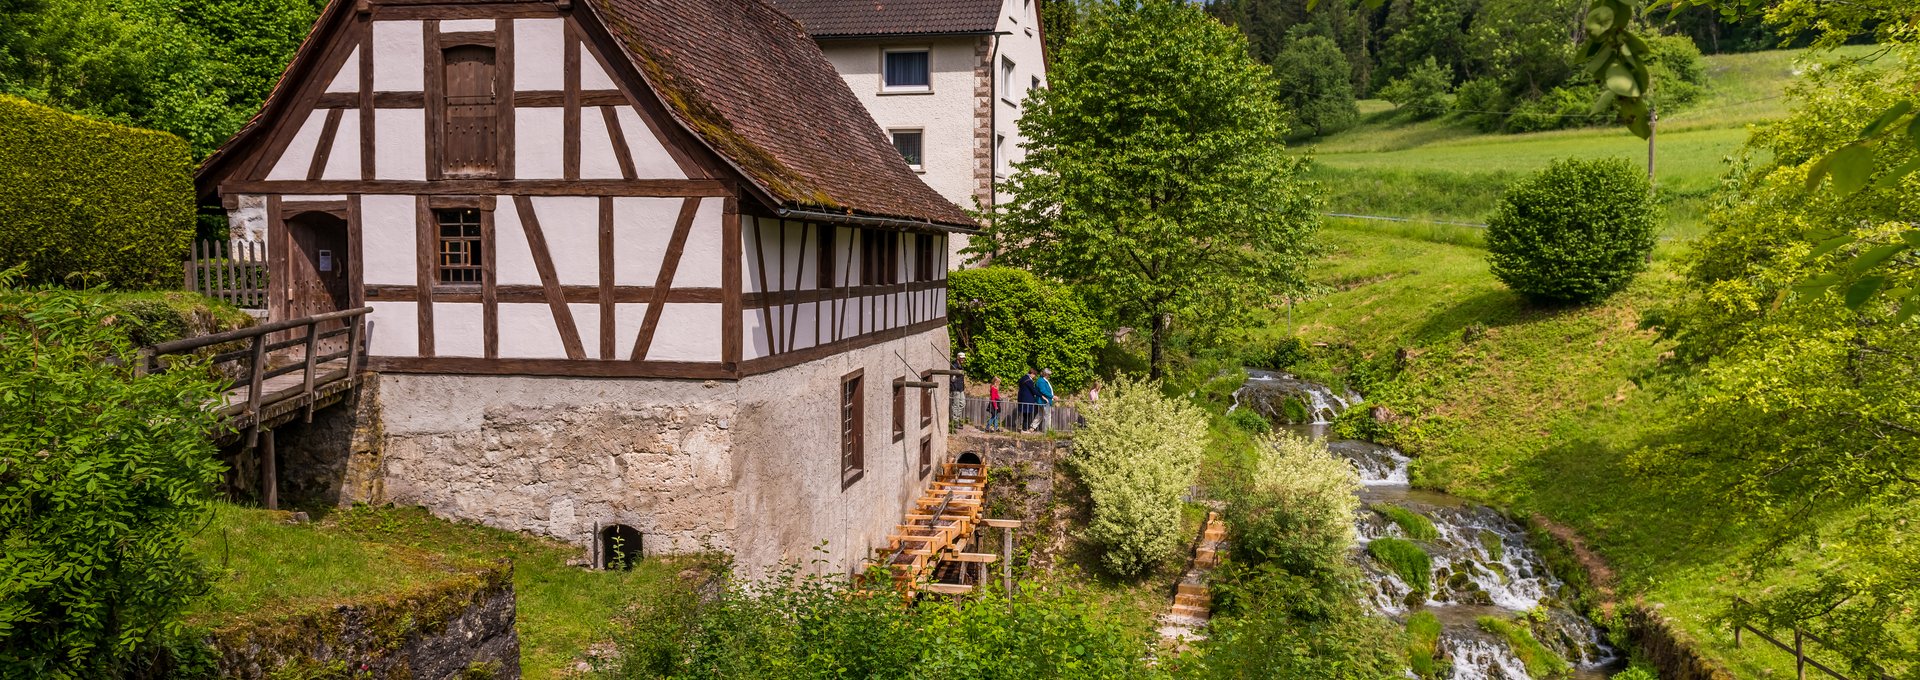 Museumsmühle im Weiler mit Lausbach